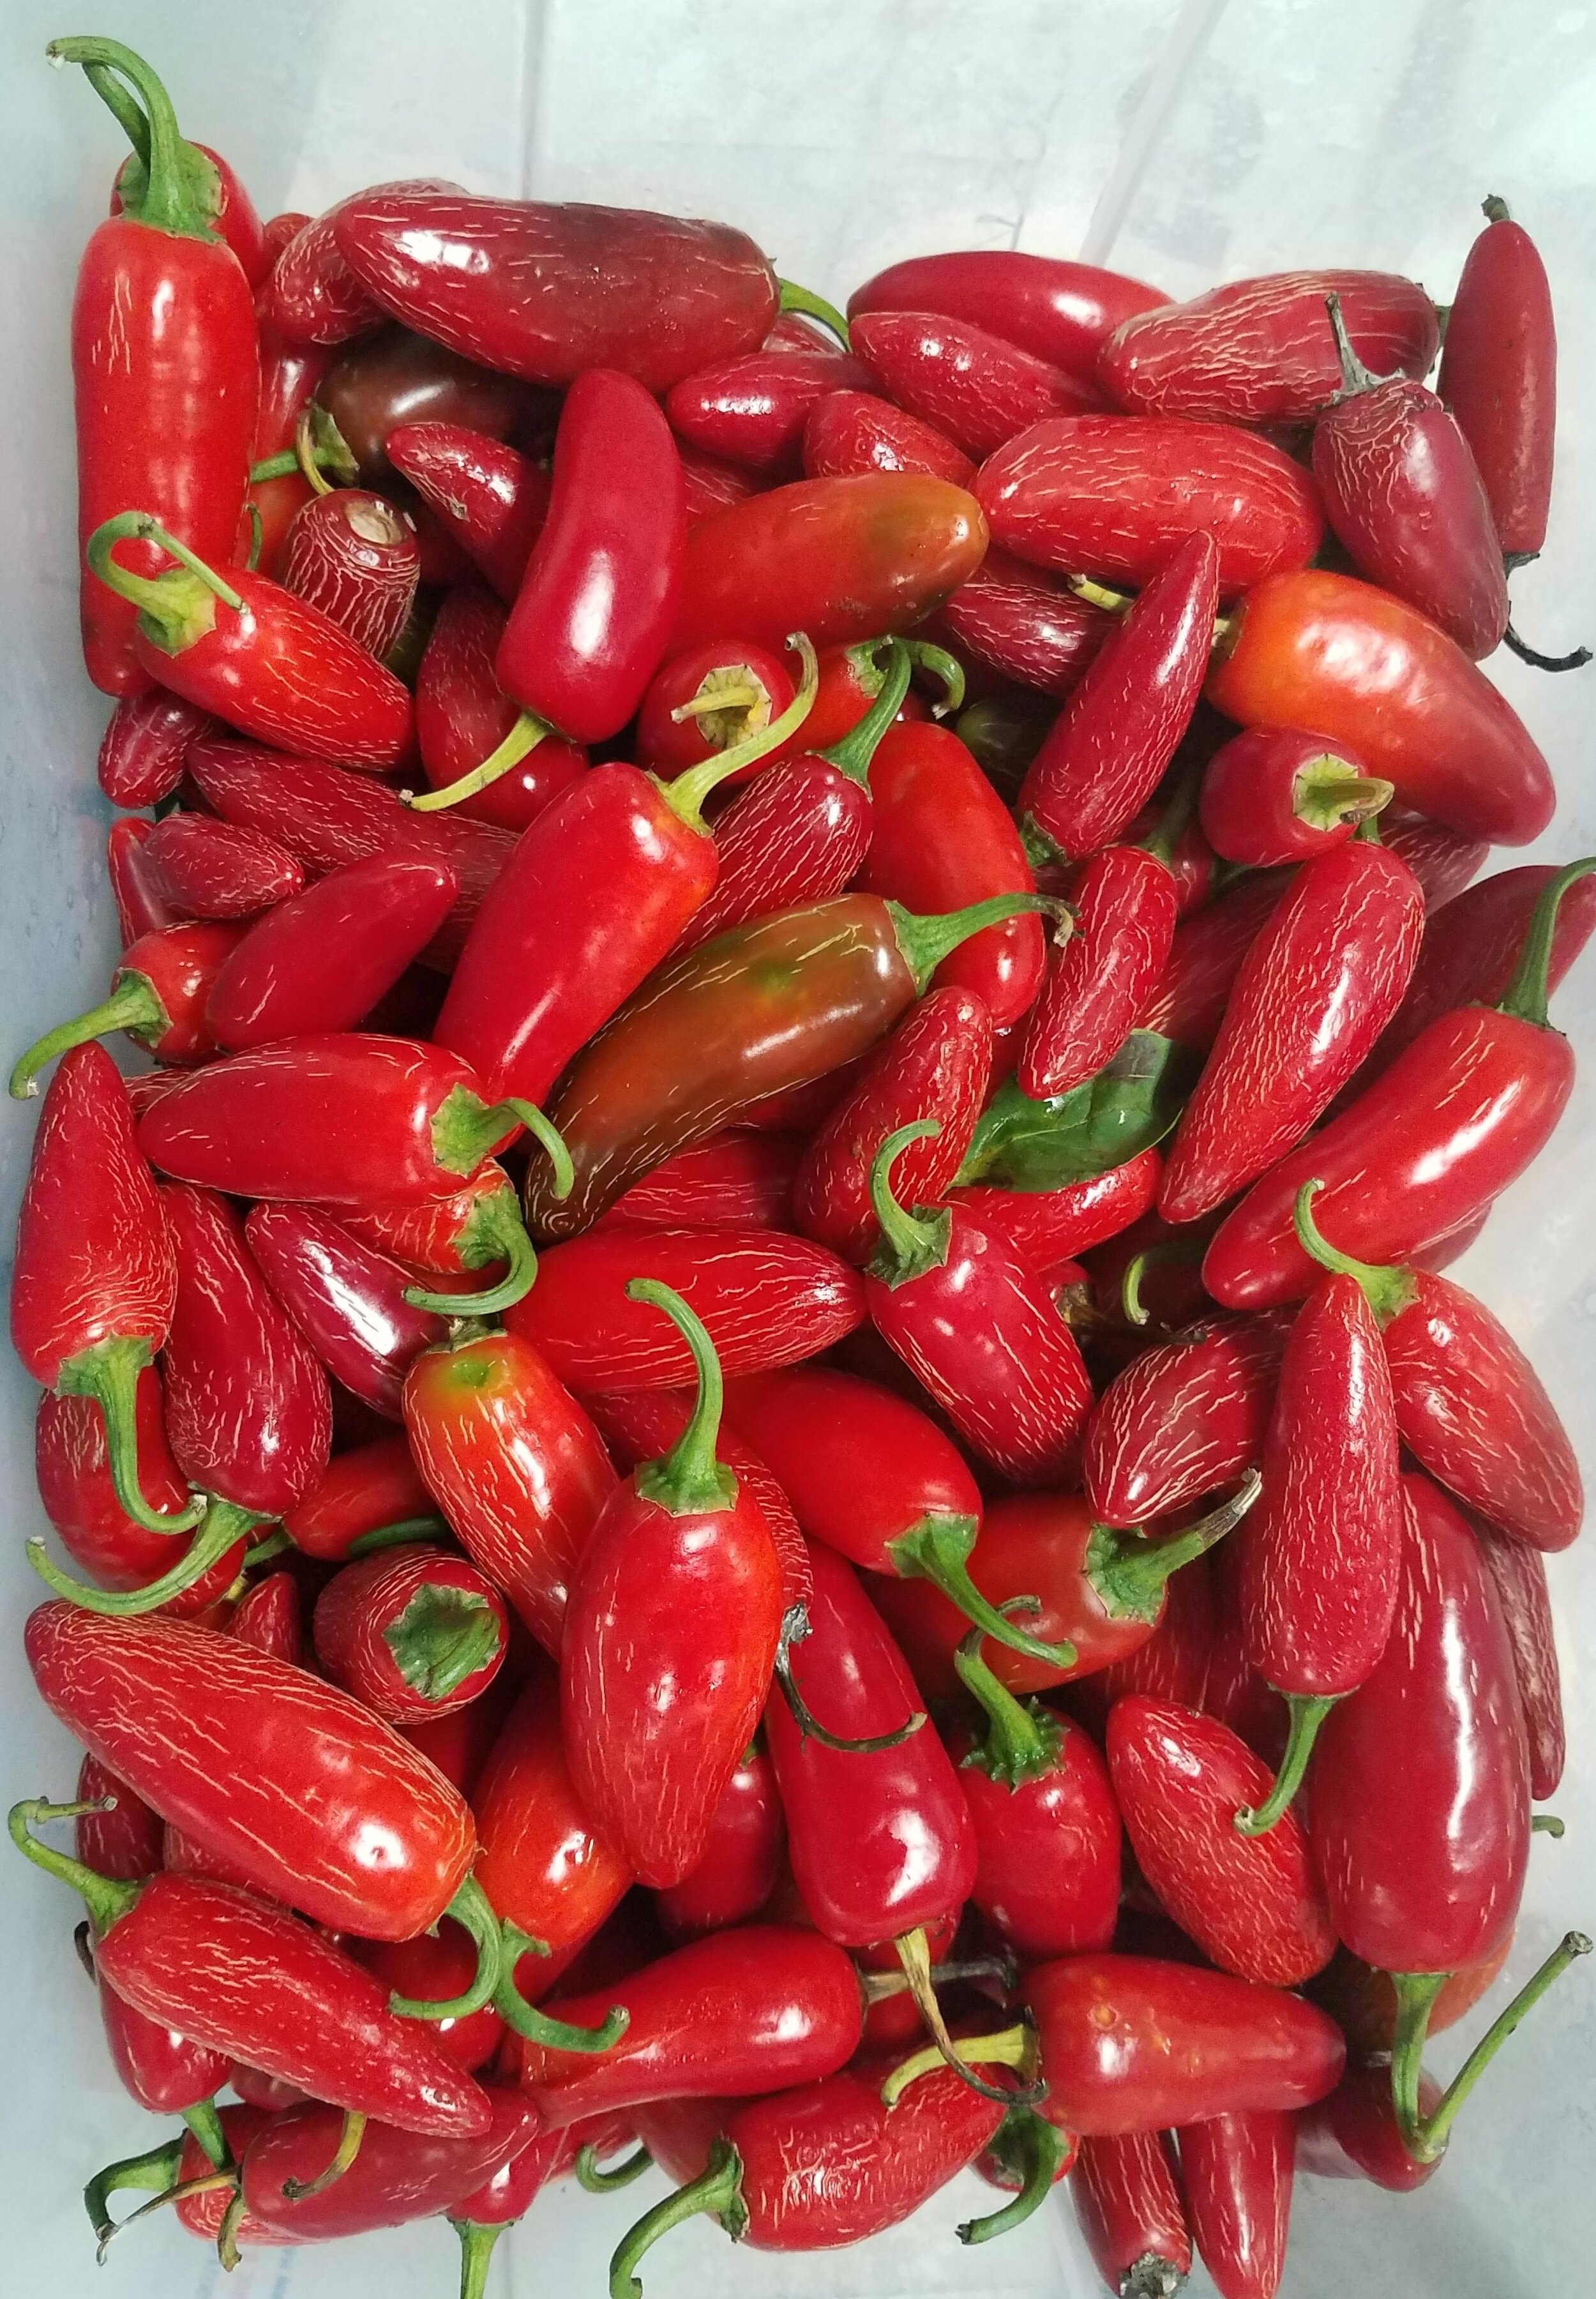 2019 peppers.jpg